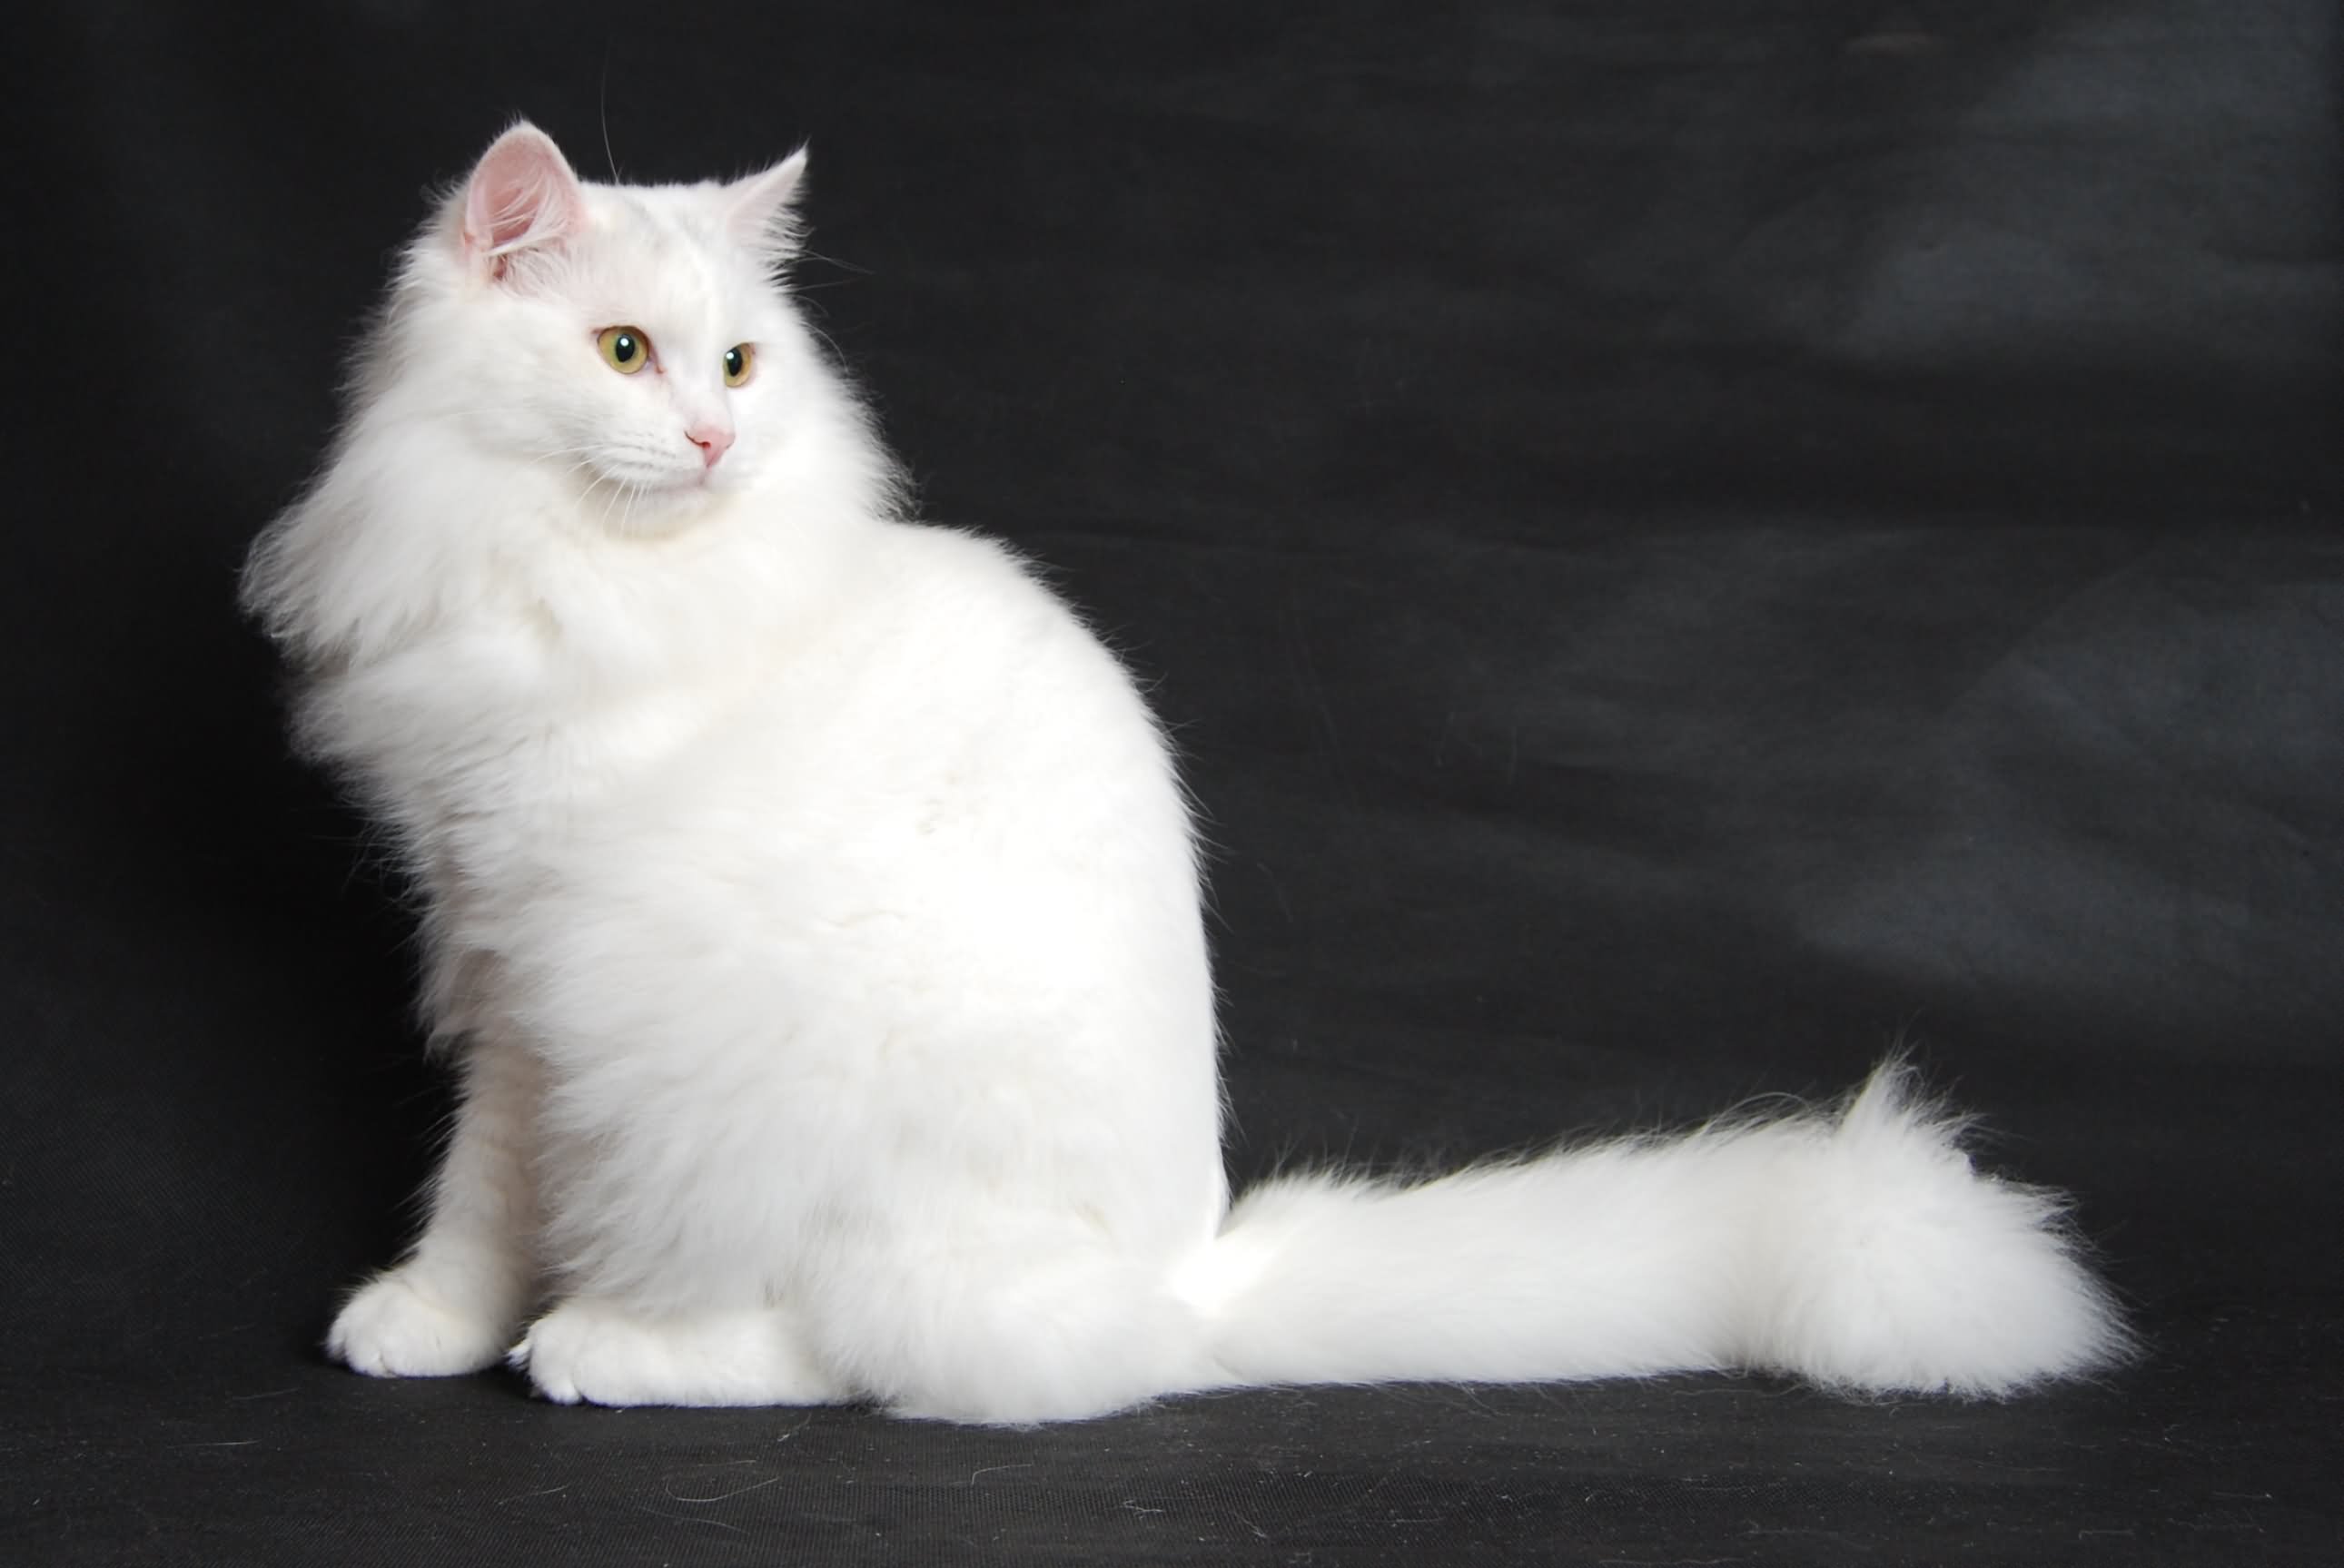 Pure White Siberian Cat Sitting